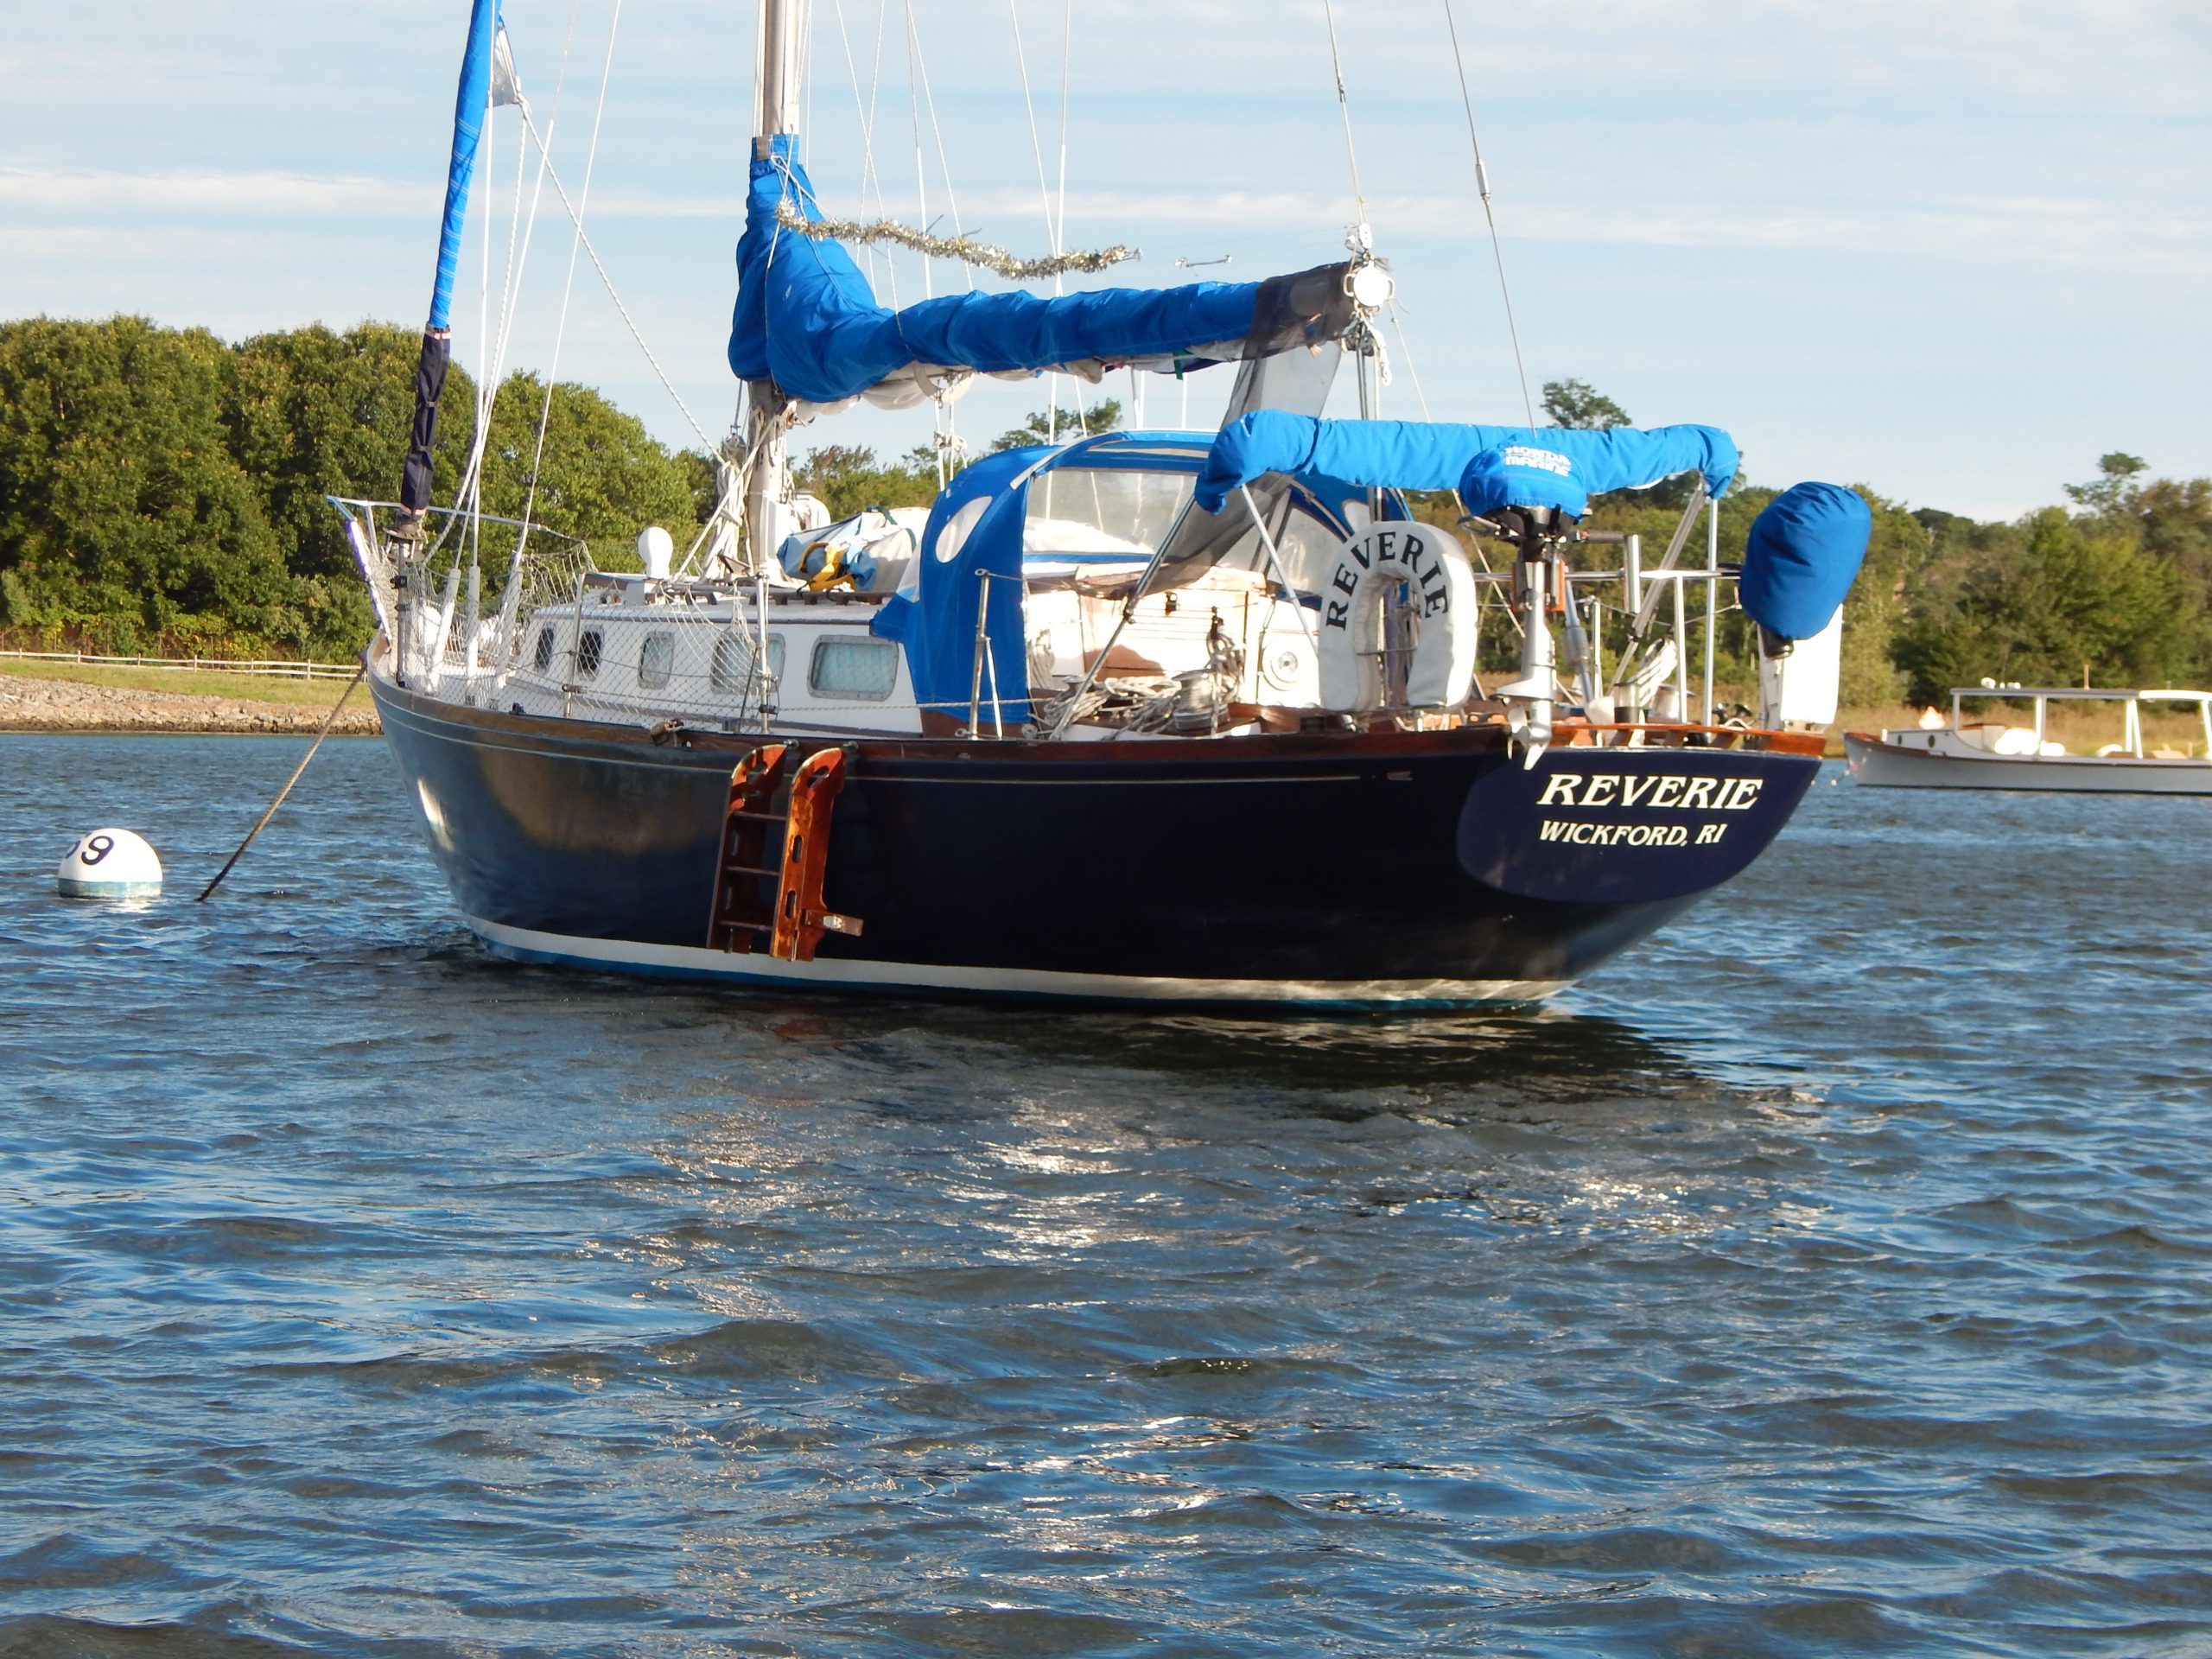 grampian 32 sailboat